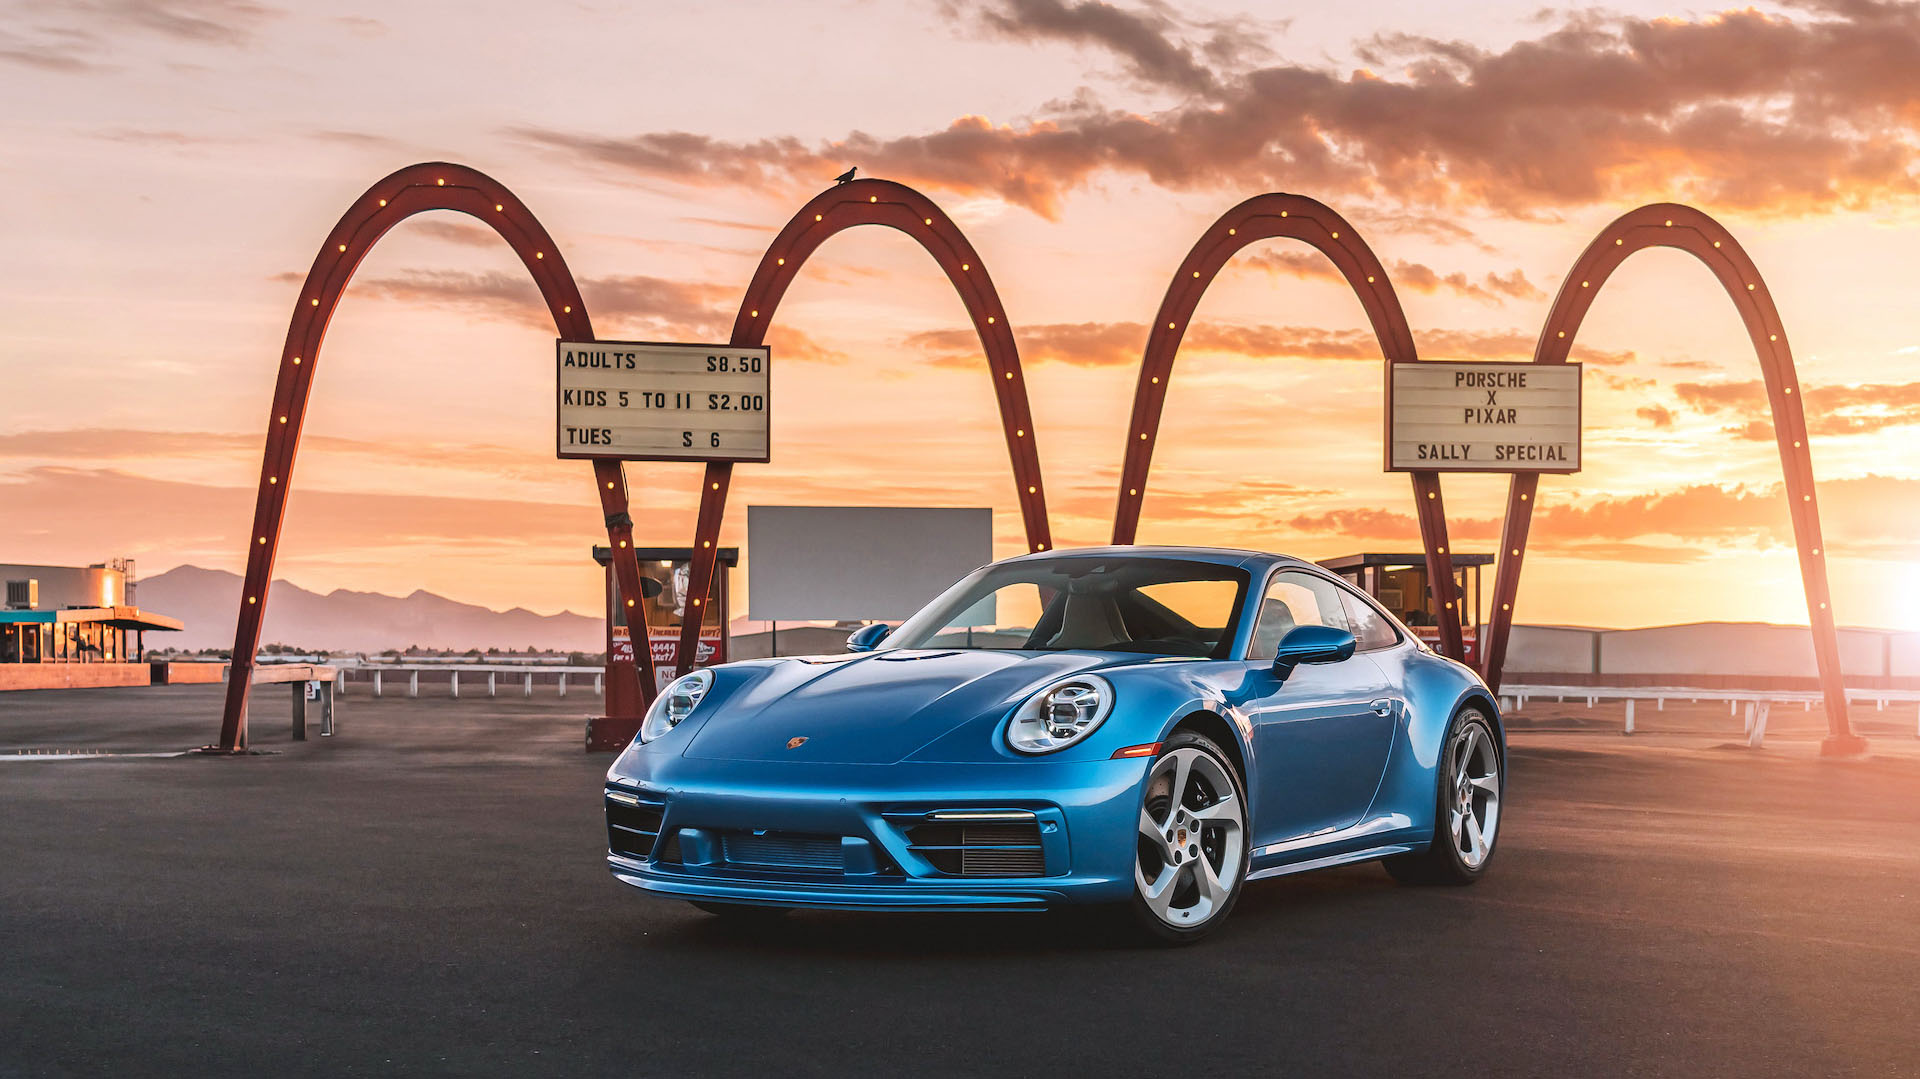 El Porsche Sally se subastó en más de 3 millones de dólares en agosto de este año